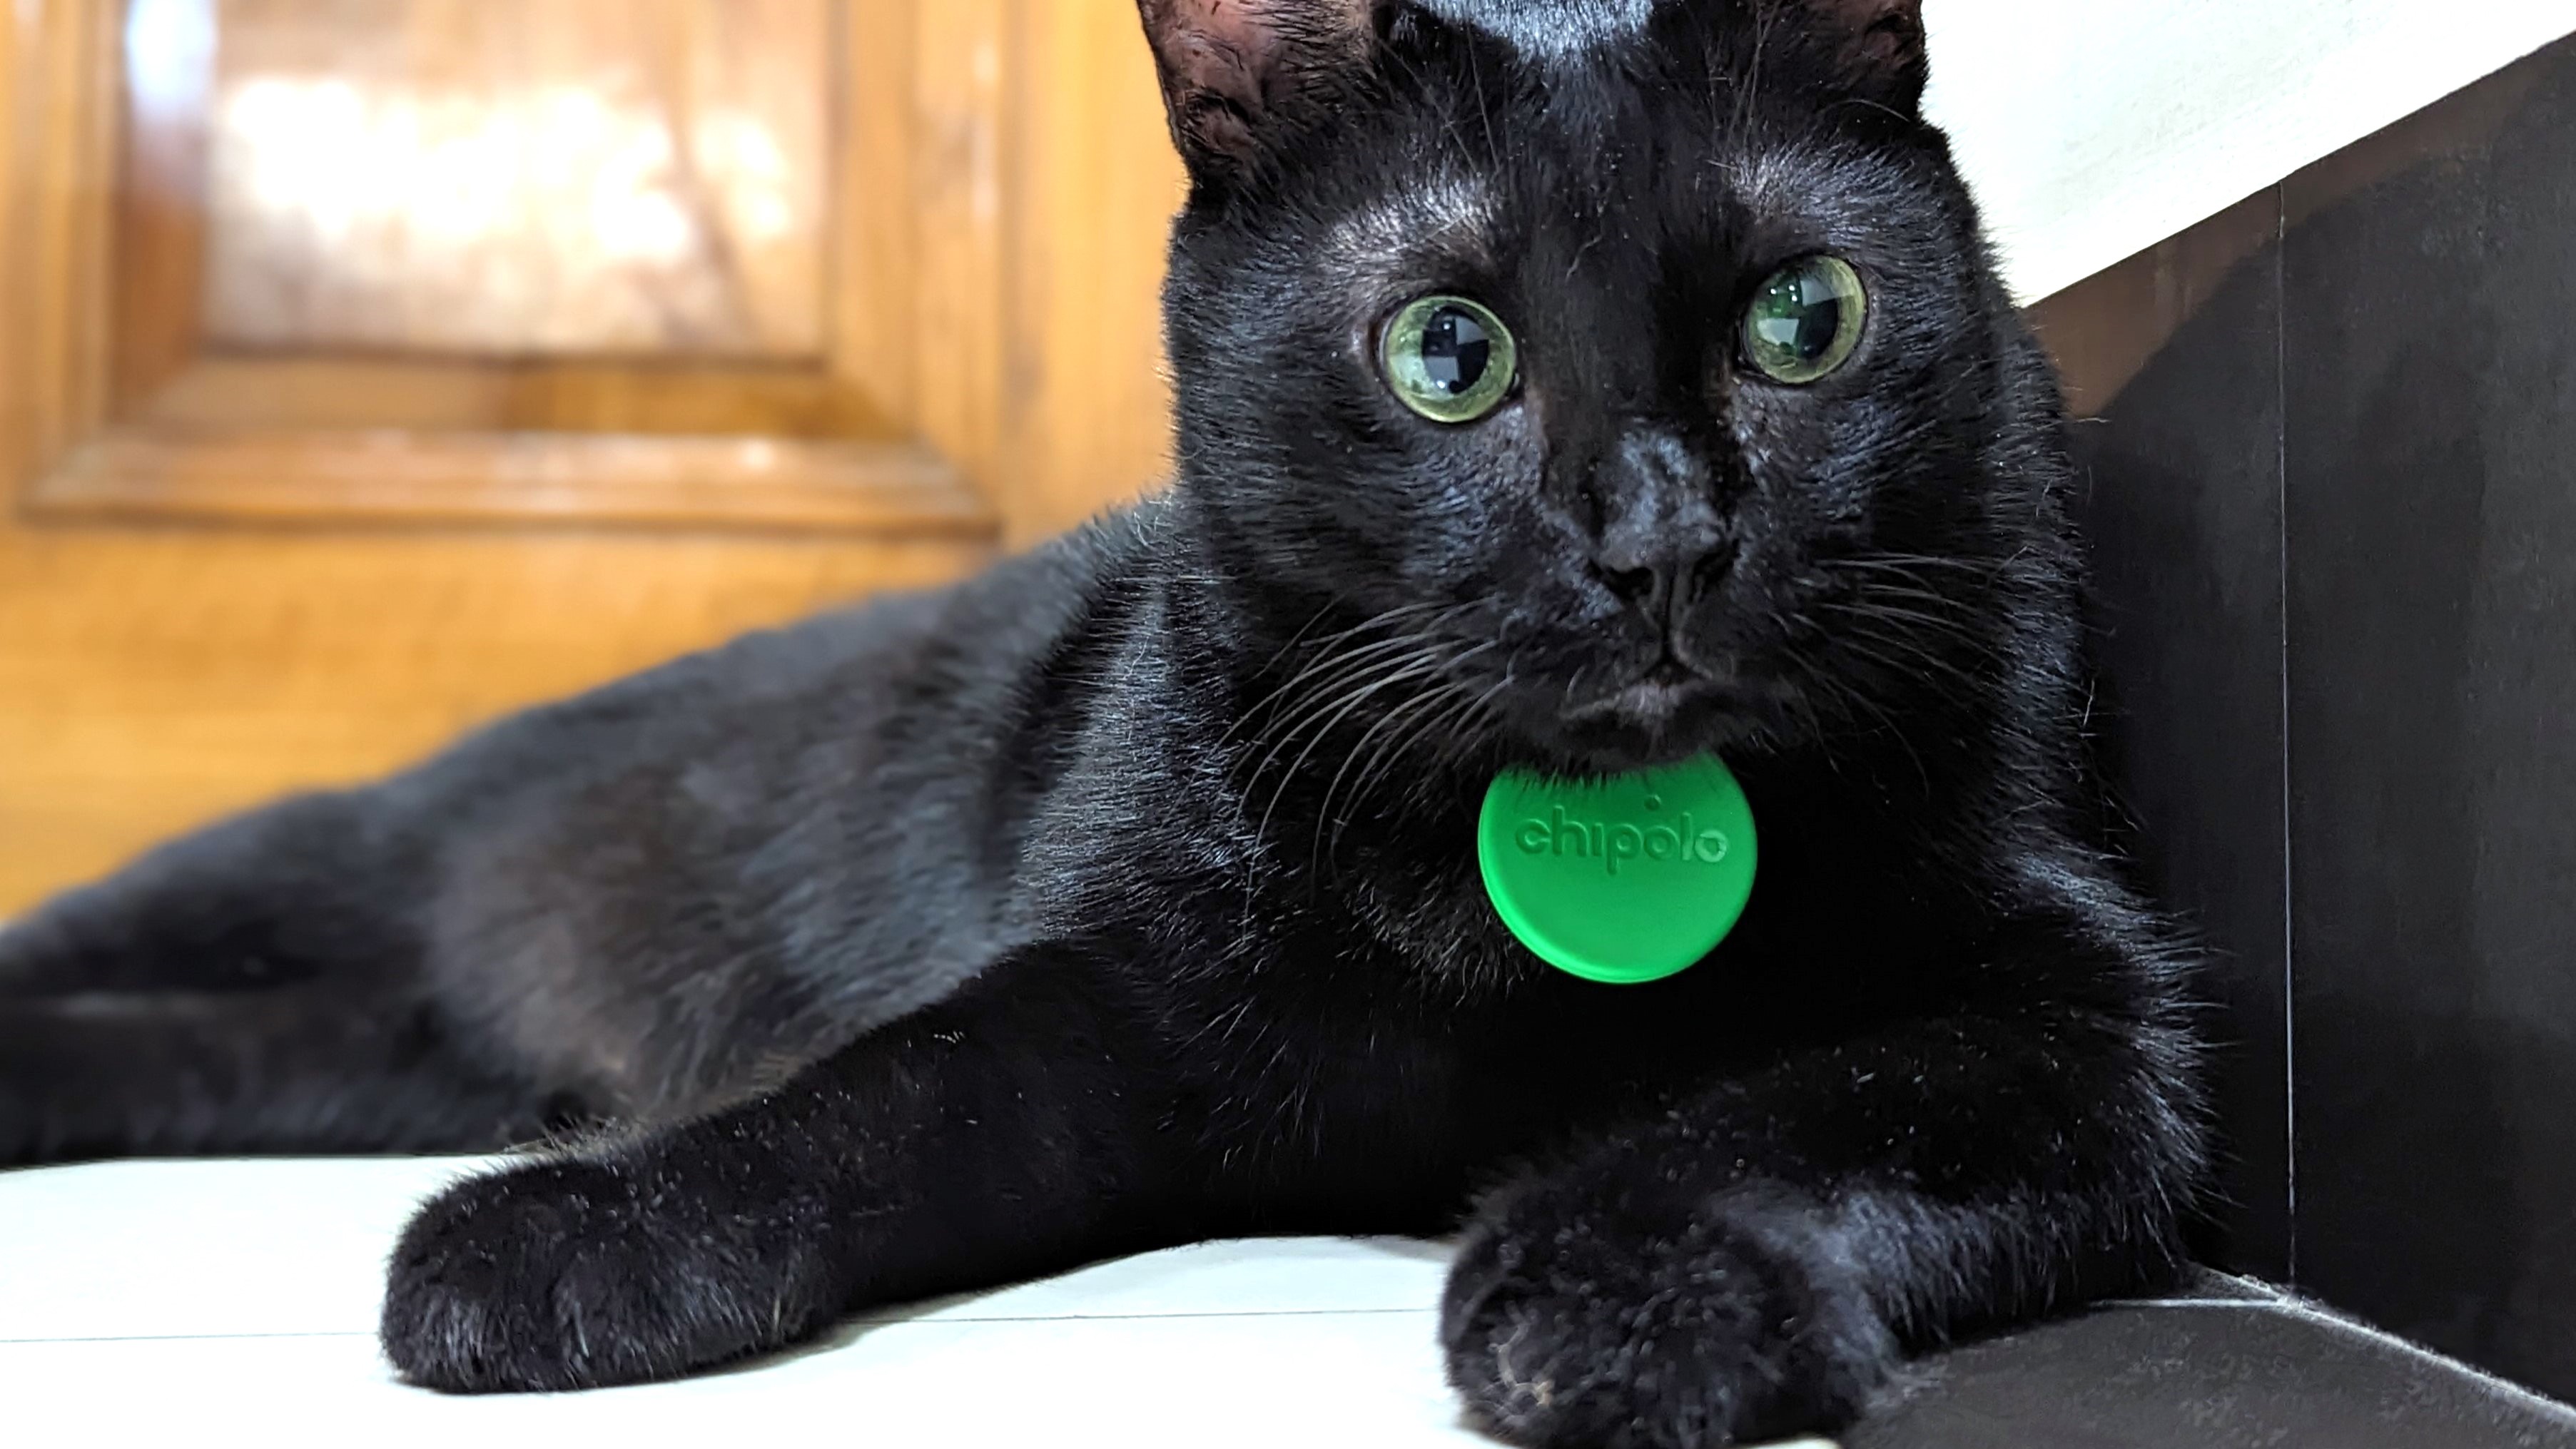 Rastreador Bluetooth Chipolo One preso à coleira de um lindo gato preto.